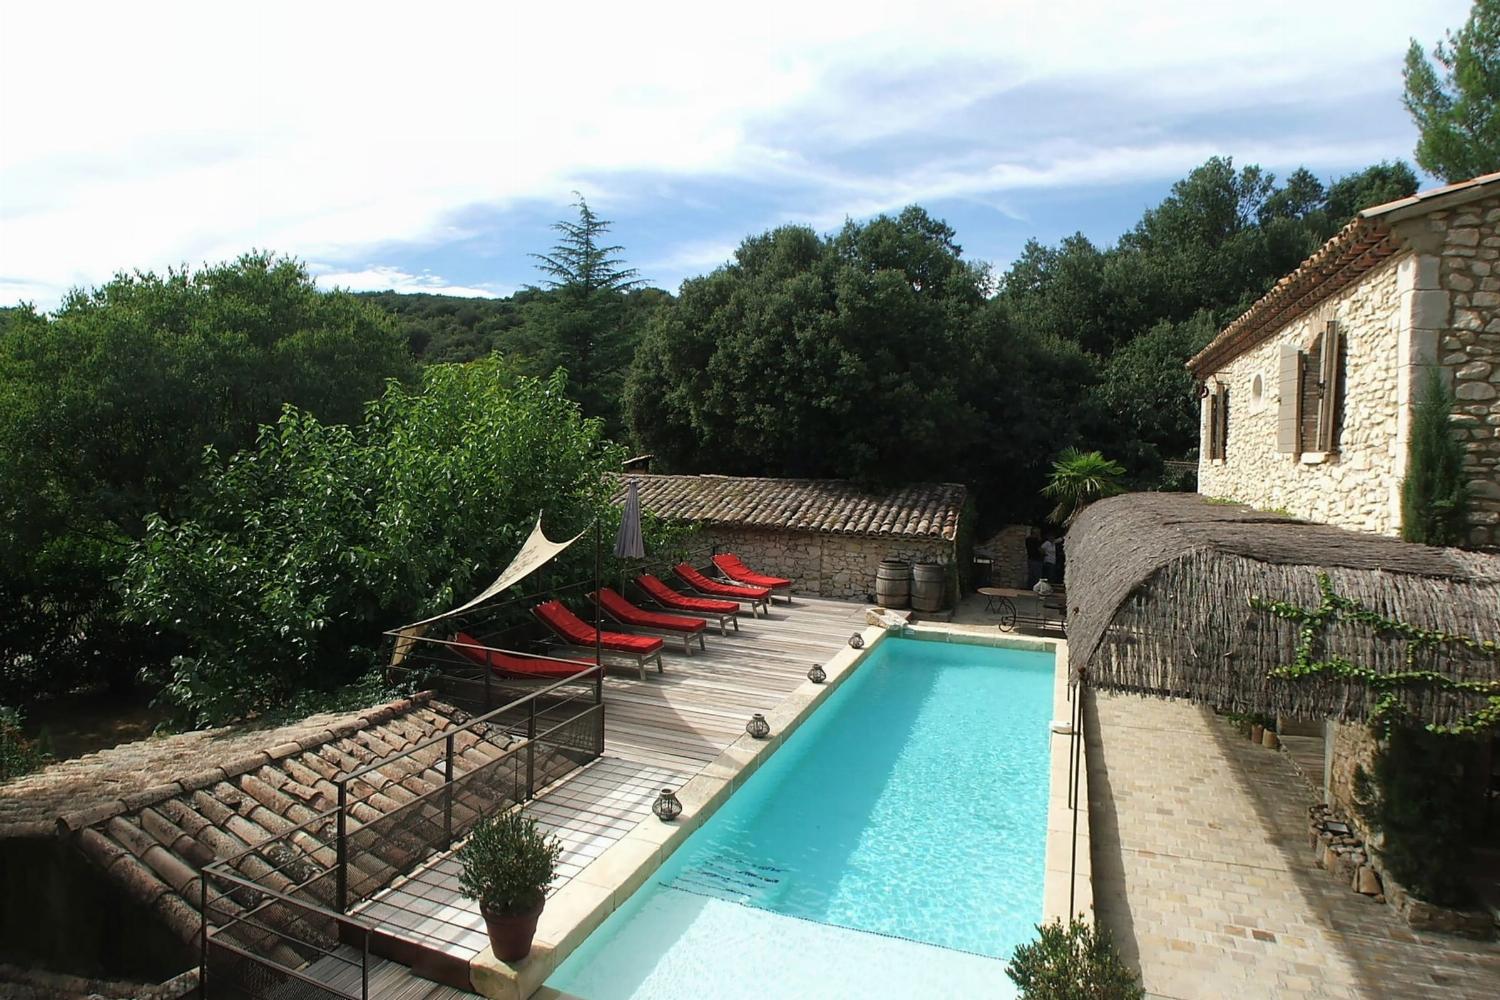 Maison de vacances dans le sud de la France avec piscine privée chauffée